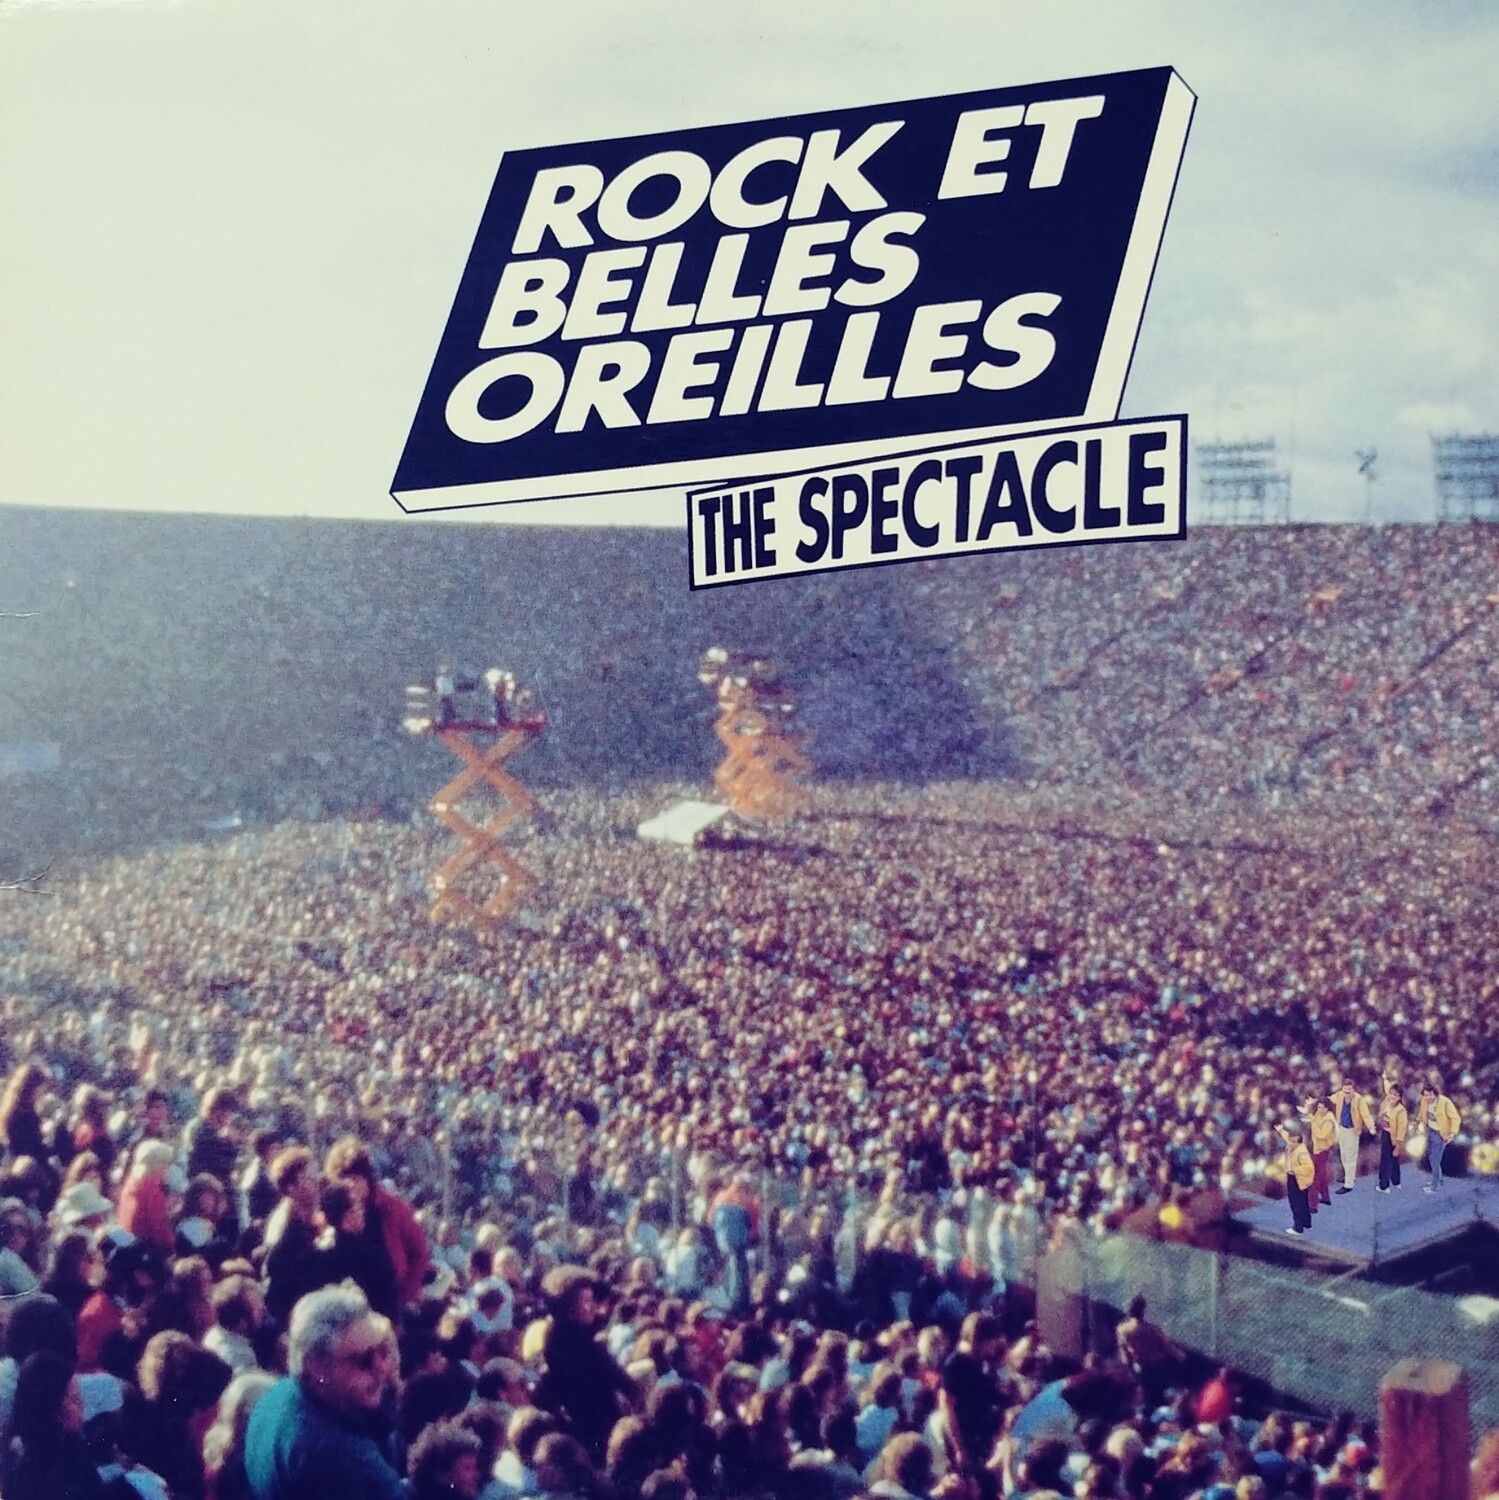 Rock et Belles Oreilles - The Spectacle